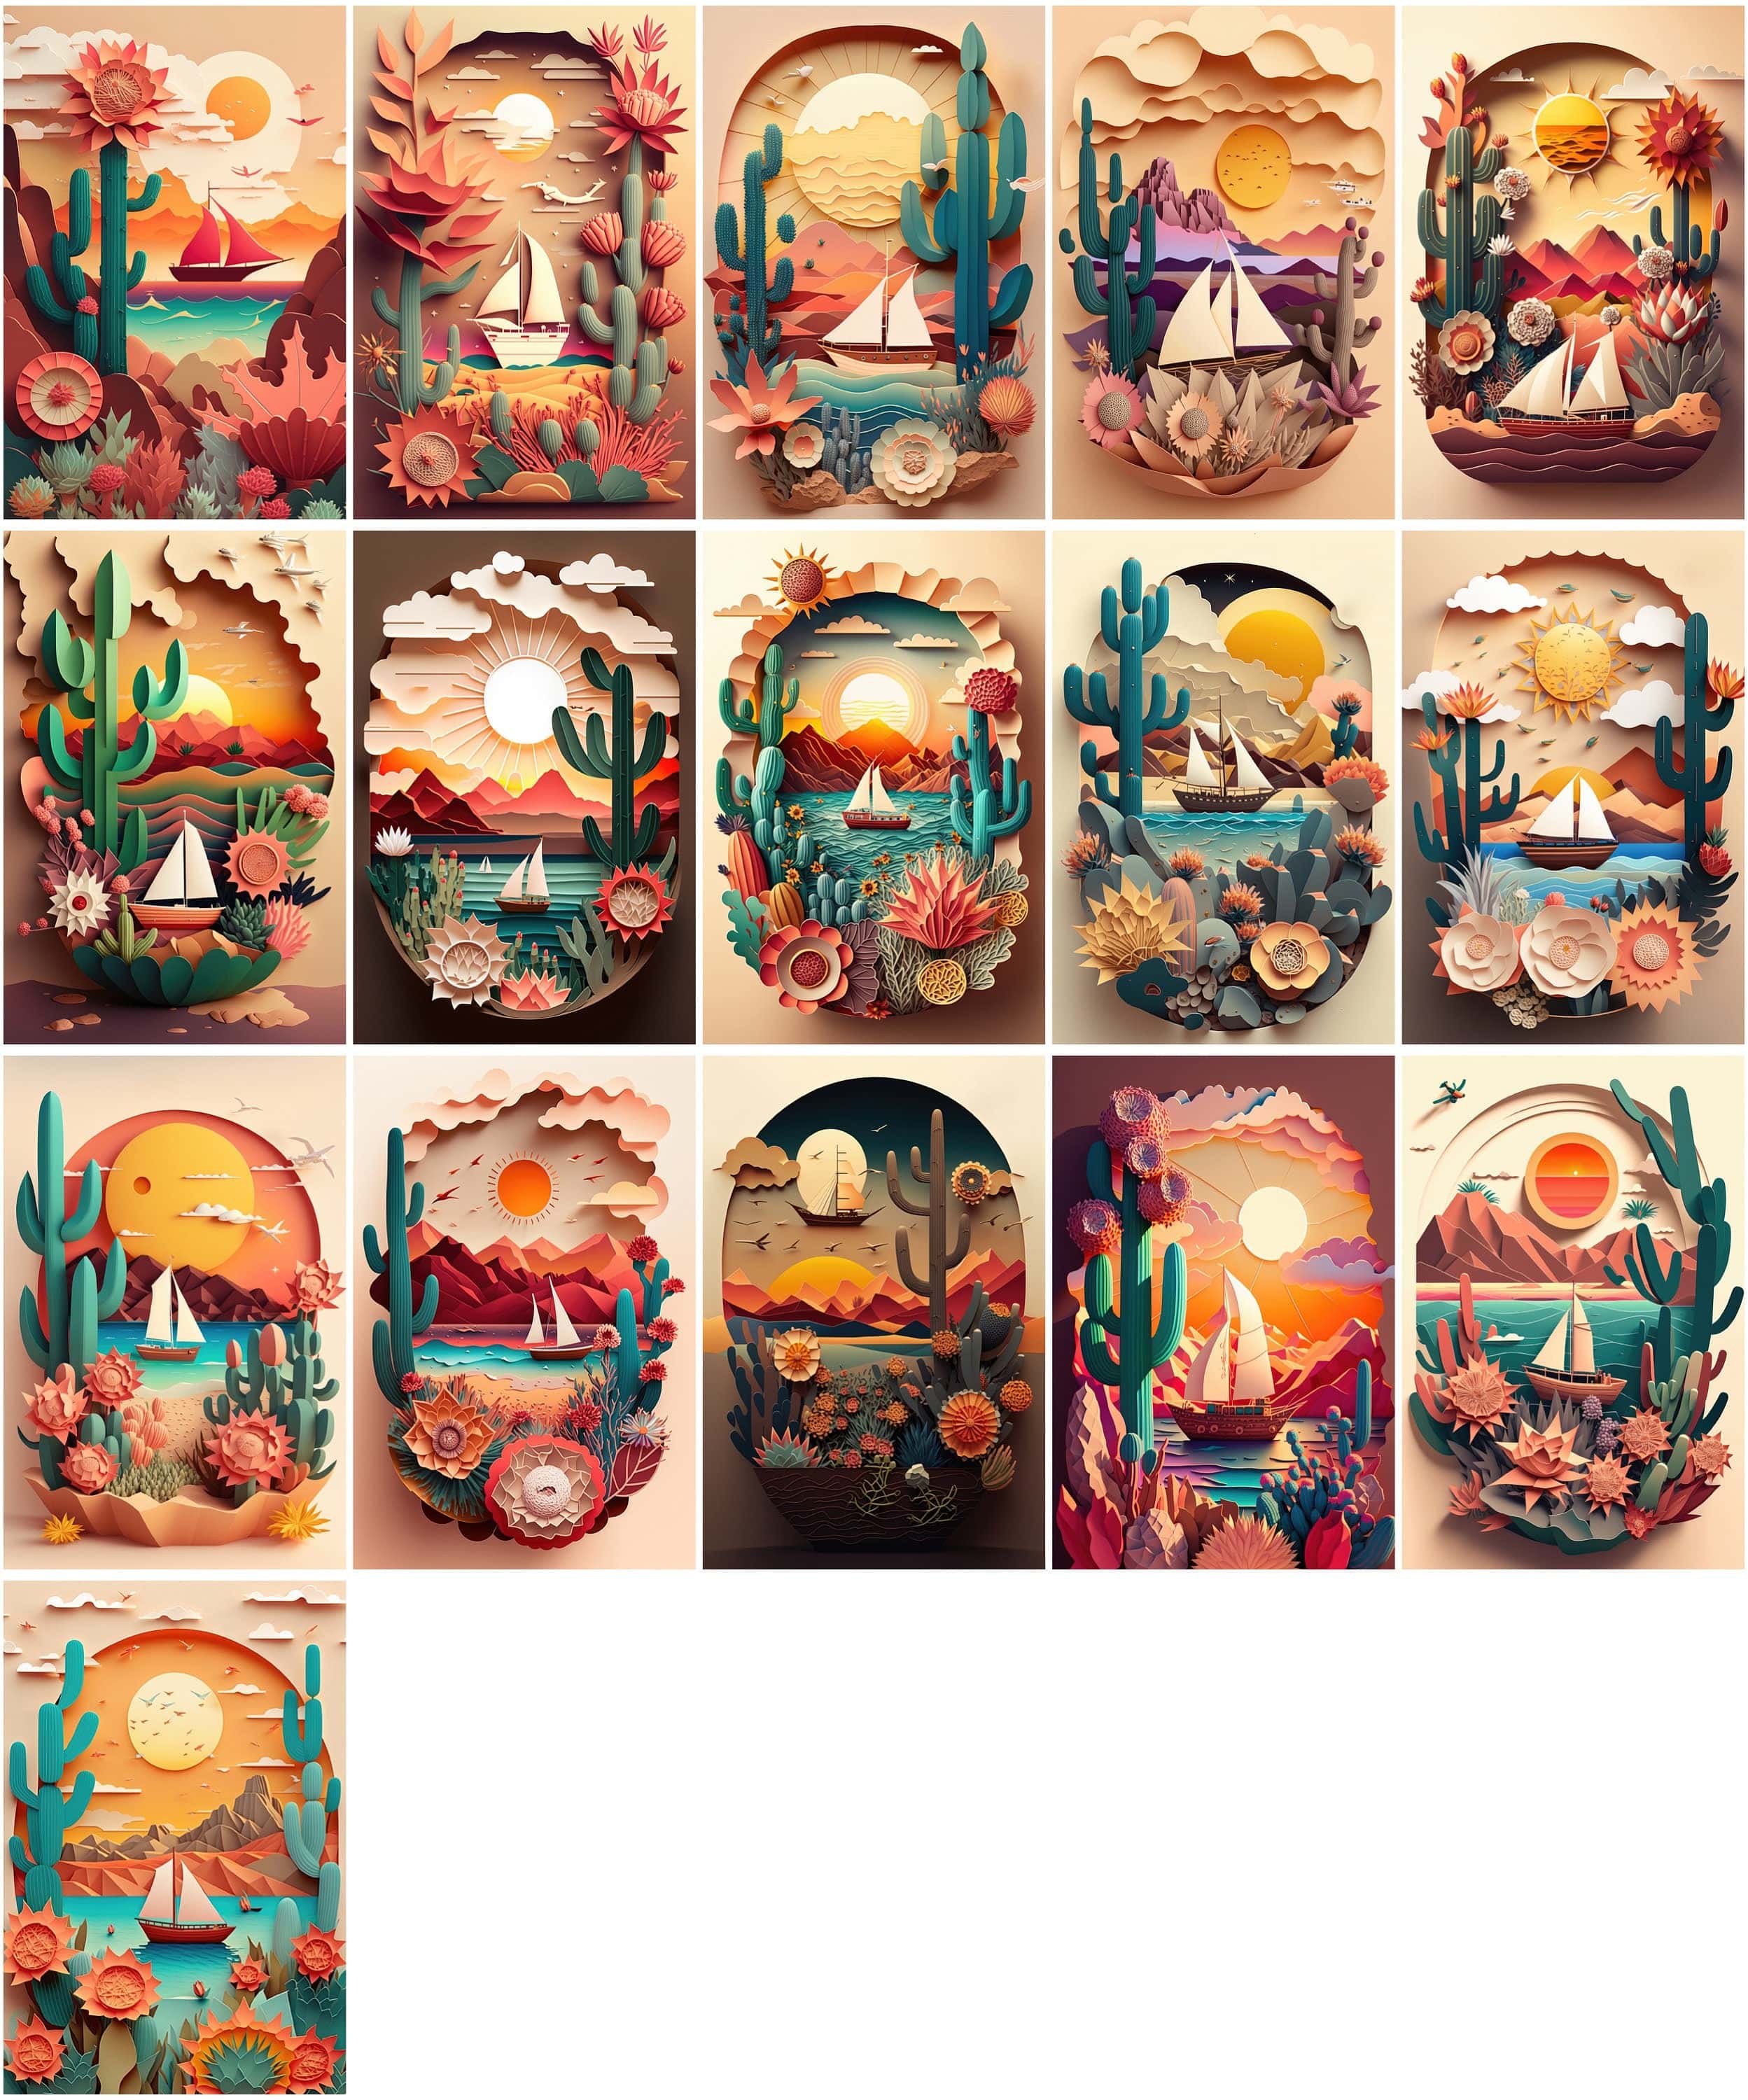 Dreamy Summer Paper Art Bundle - 75 Images - Sun, Sea, Boat, Plants, Cactus, Desert, Flowers, Auspicious Clouds - Paper Cuttings Collection Digital Download Sumobundle